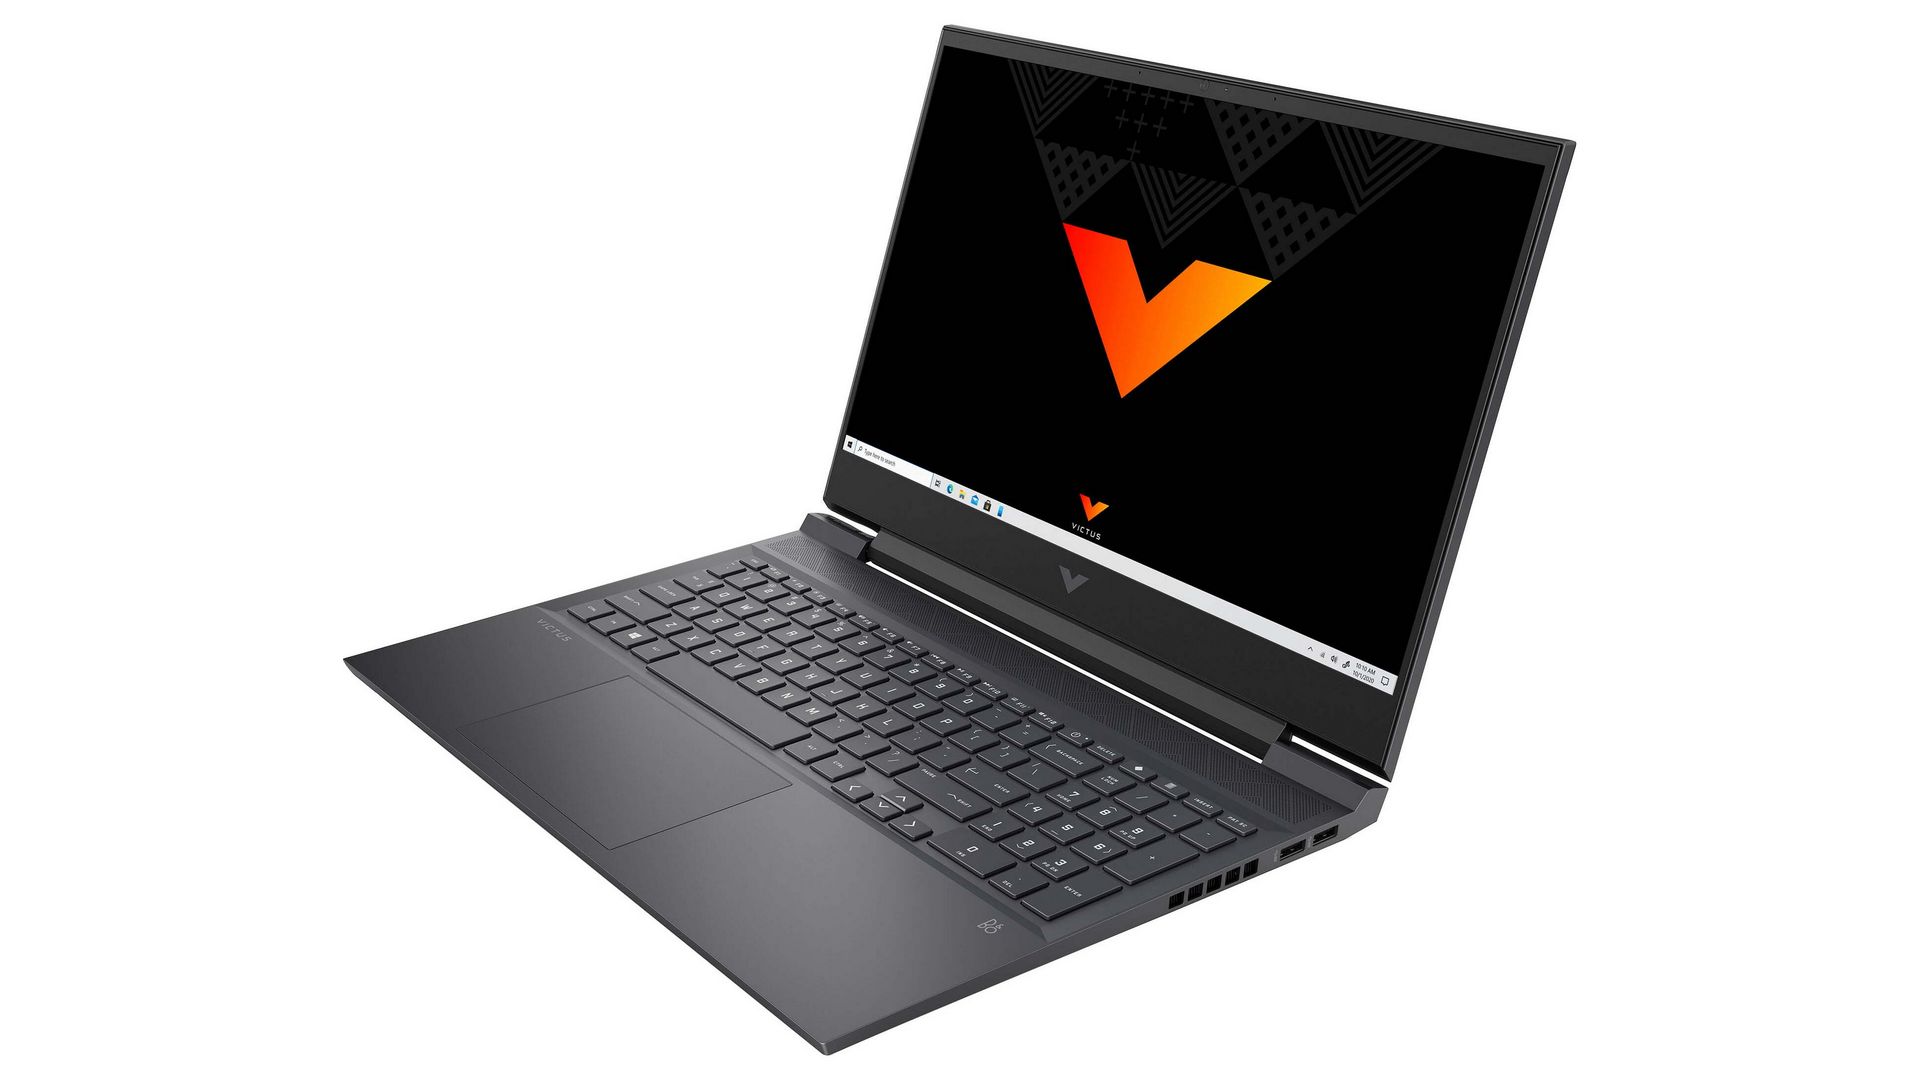 Laptop HP VICTUS: Khám phá sự mạnh mẽ của Laptop HP VICTUS, thiết kế đẹp mắt, màn hình Full HD, hiệu năng cao vượt trội và đáp ứng mọi nhu cầu công việc và giải trí của bạn. Xem ngay hình ảnh sản phẩm để khám phá thêm về sự tuyệt vời của HP VICTUS.